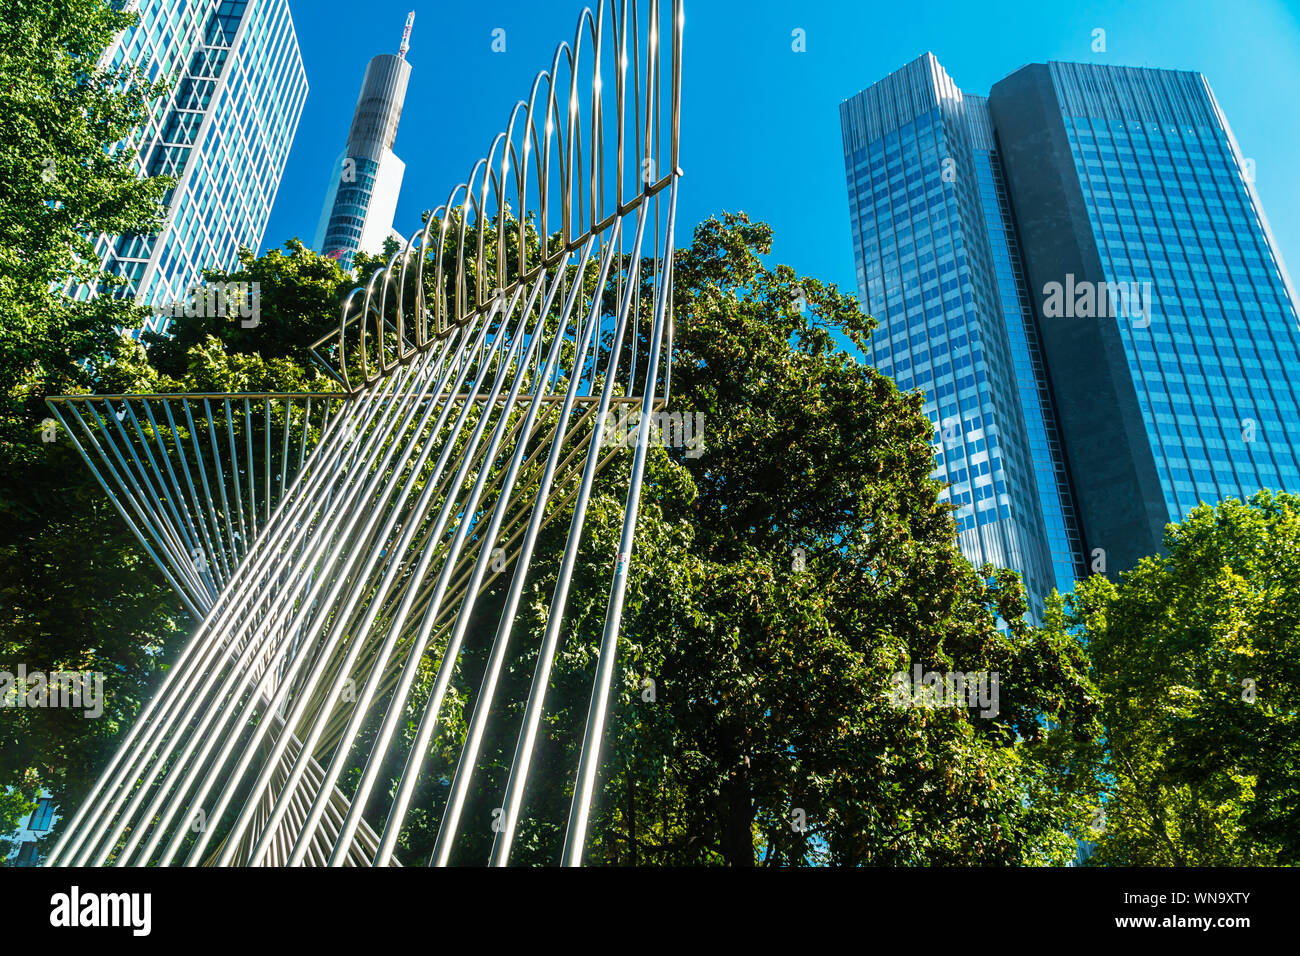 Stadtzentrum, Frankfurt am Main. Wolkenkratzer in Frankfurt am Main. Moderne Gebäude der europäische Bankenzentrum Stadt. Europas. Stockfoto